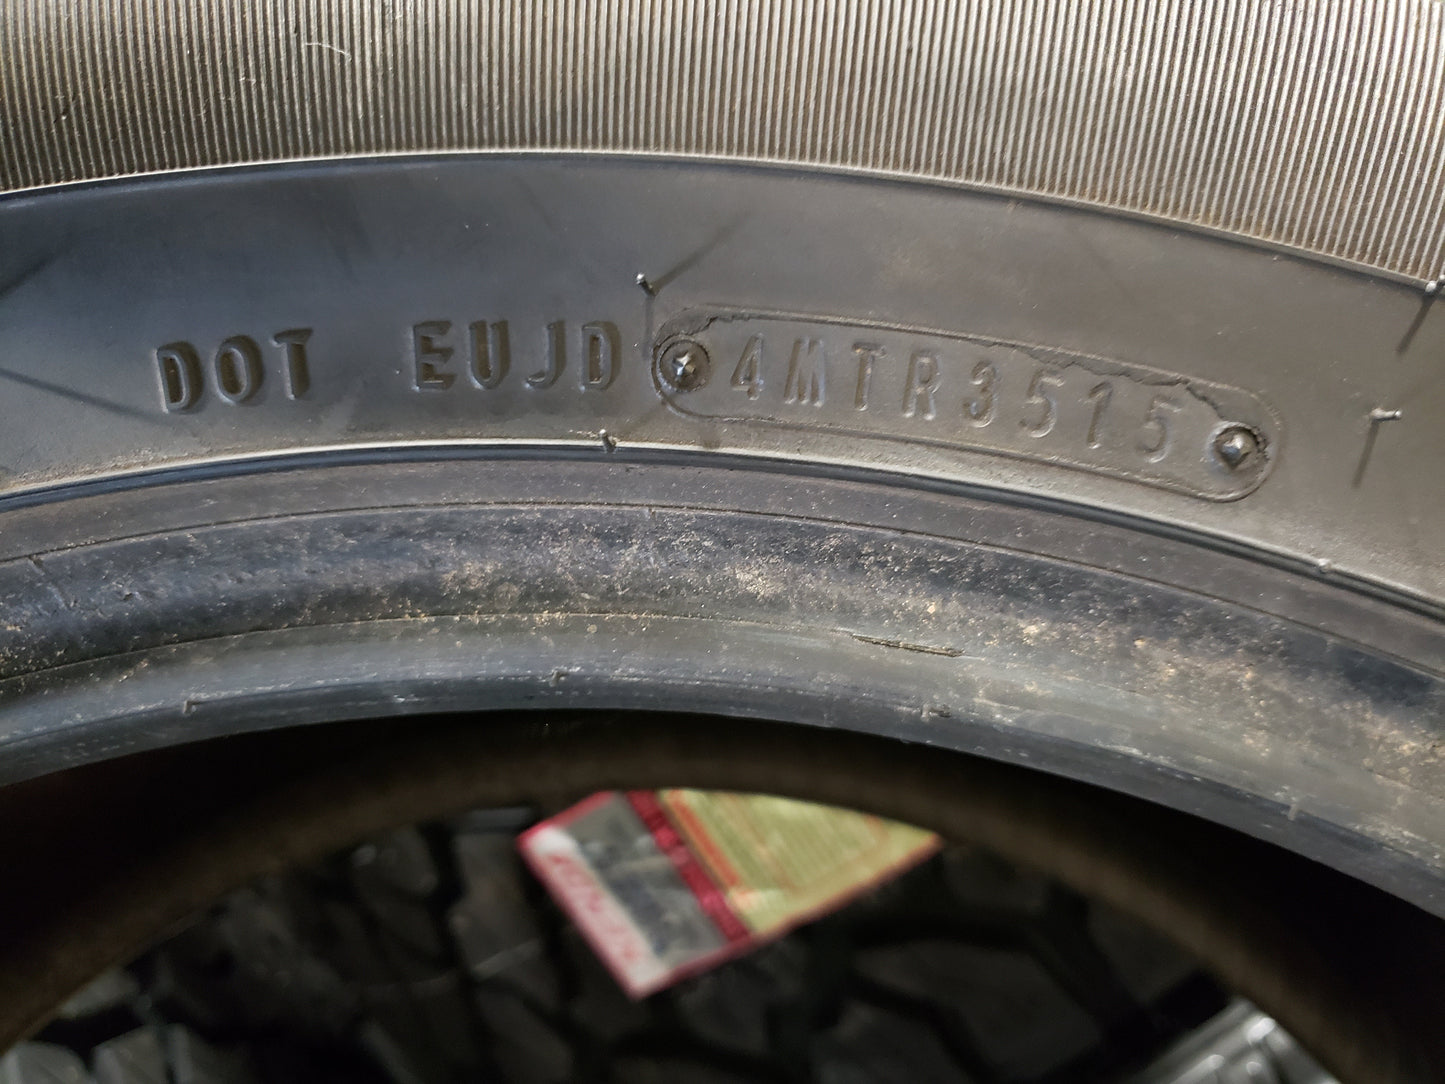 SINGLE 285/50R20 Dunlop Grandtrek PT 2A 111 V SL - Used Tires